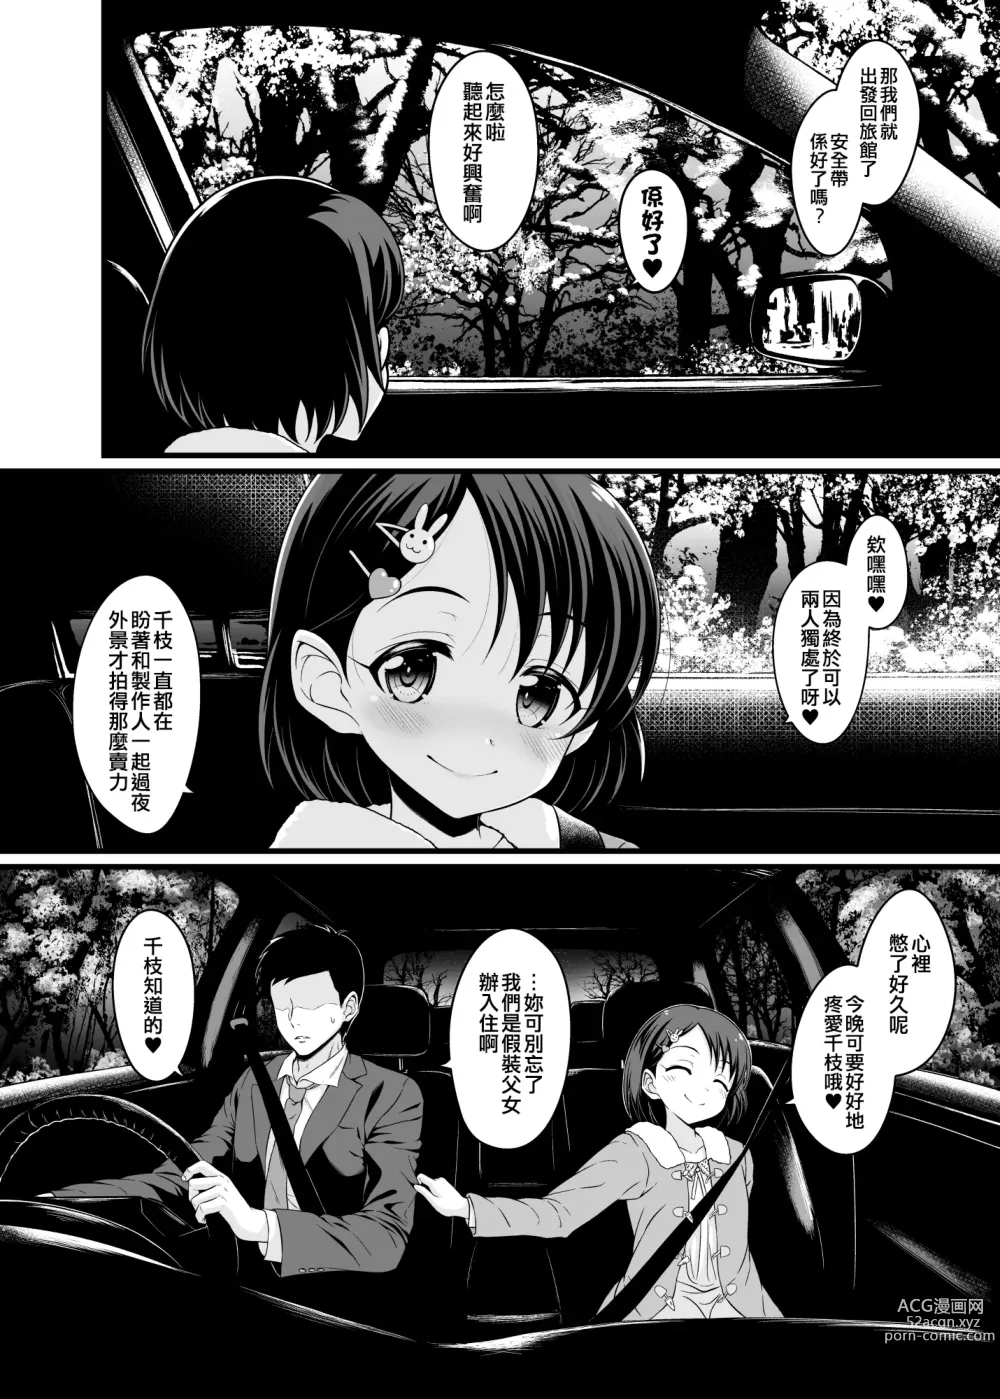 Page 5 of doujinshi Chie to Otona no Onsen Ryokou